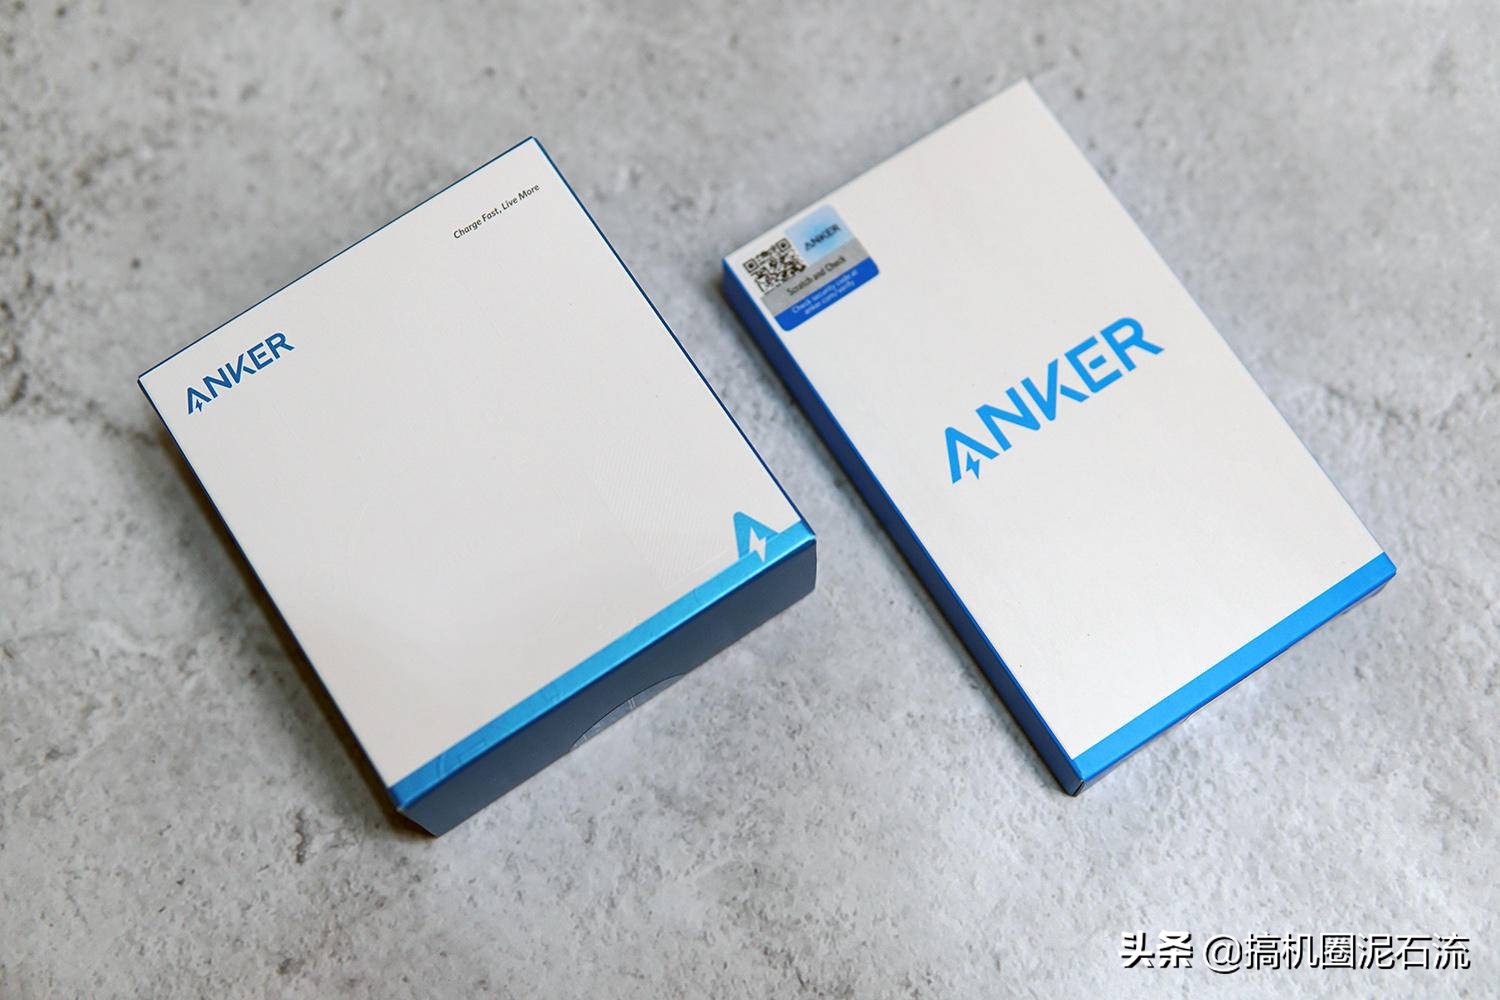 Anker 推出市场上首批采用 USB-C 的 KVM 切换器